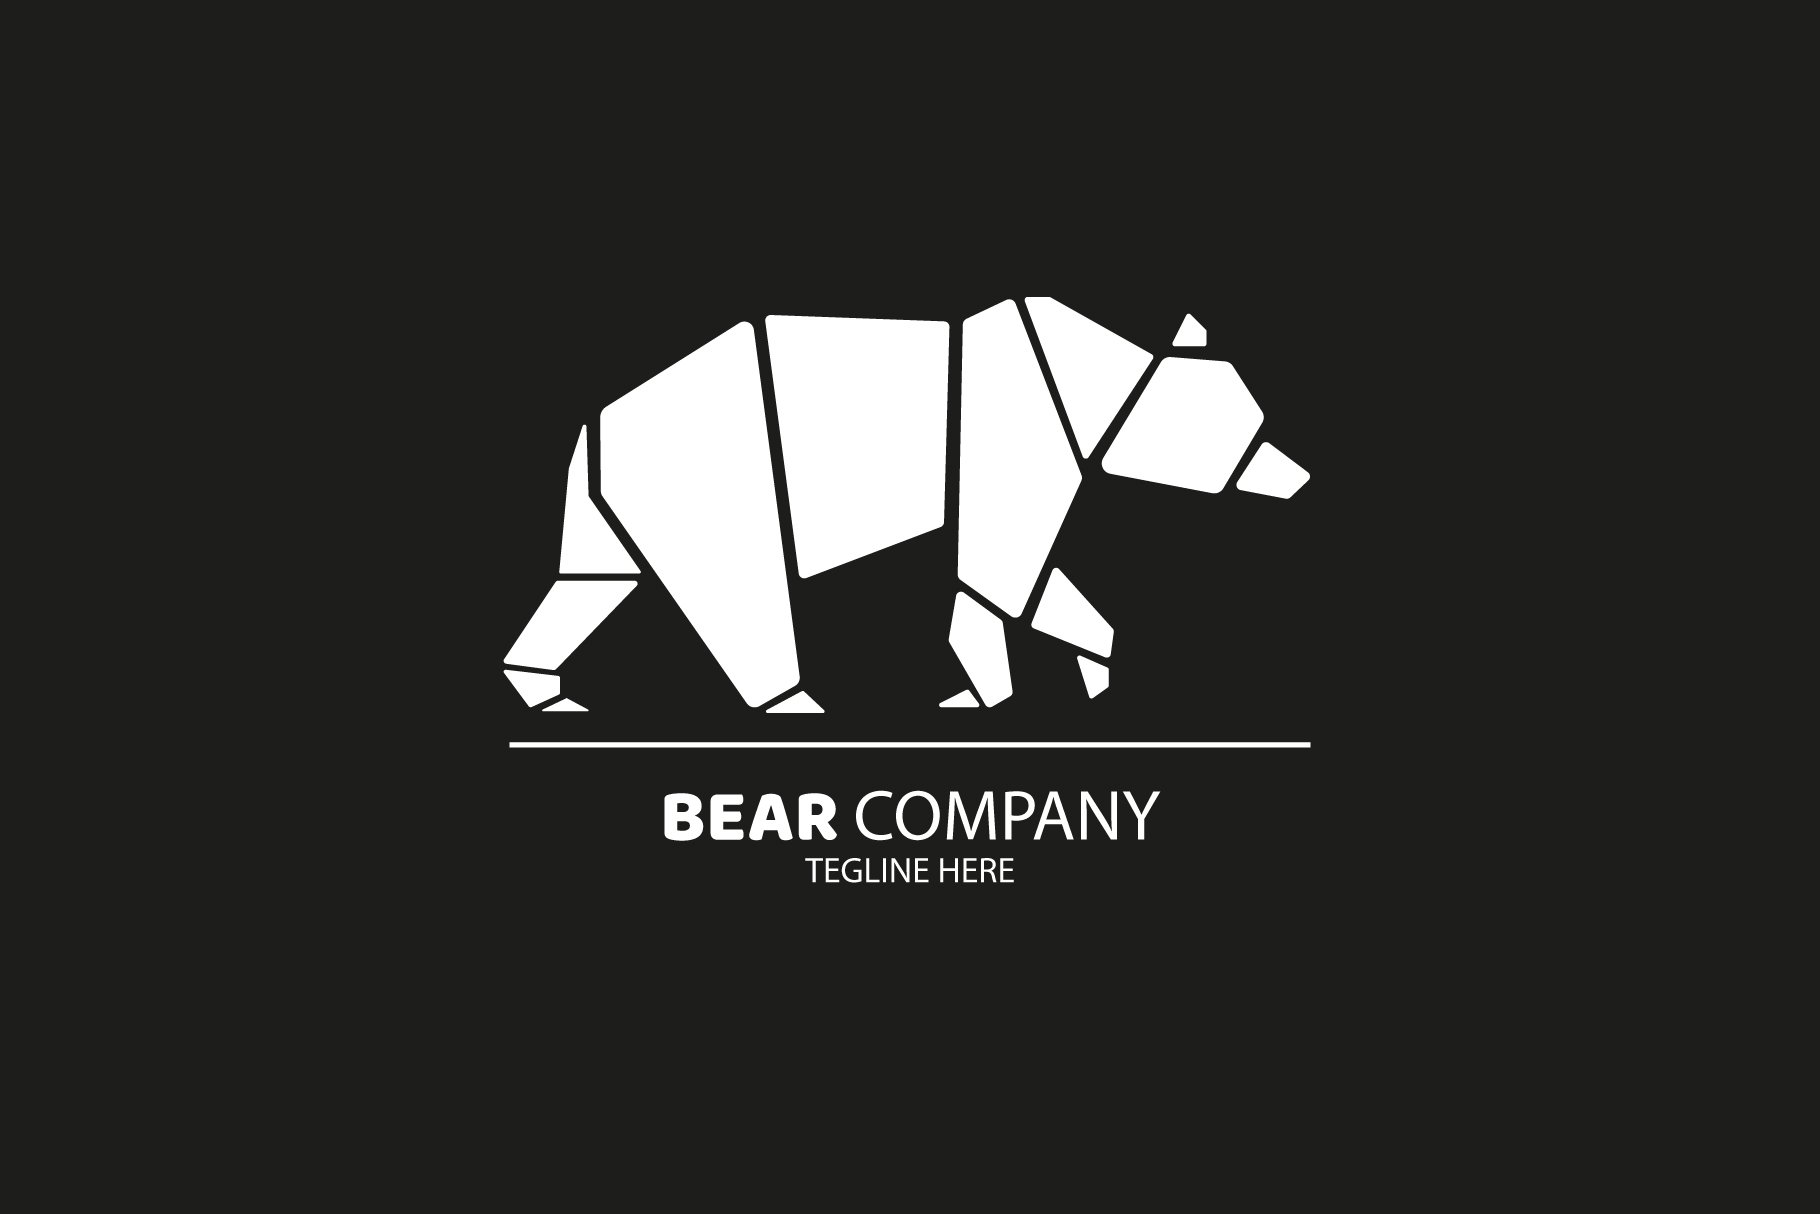 Polar Bear Logo Design cover image.